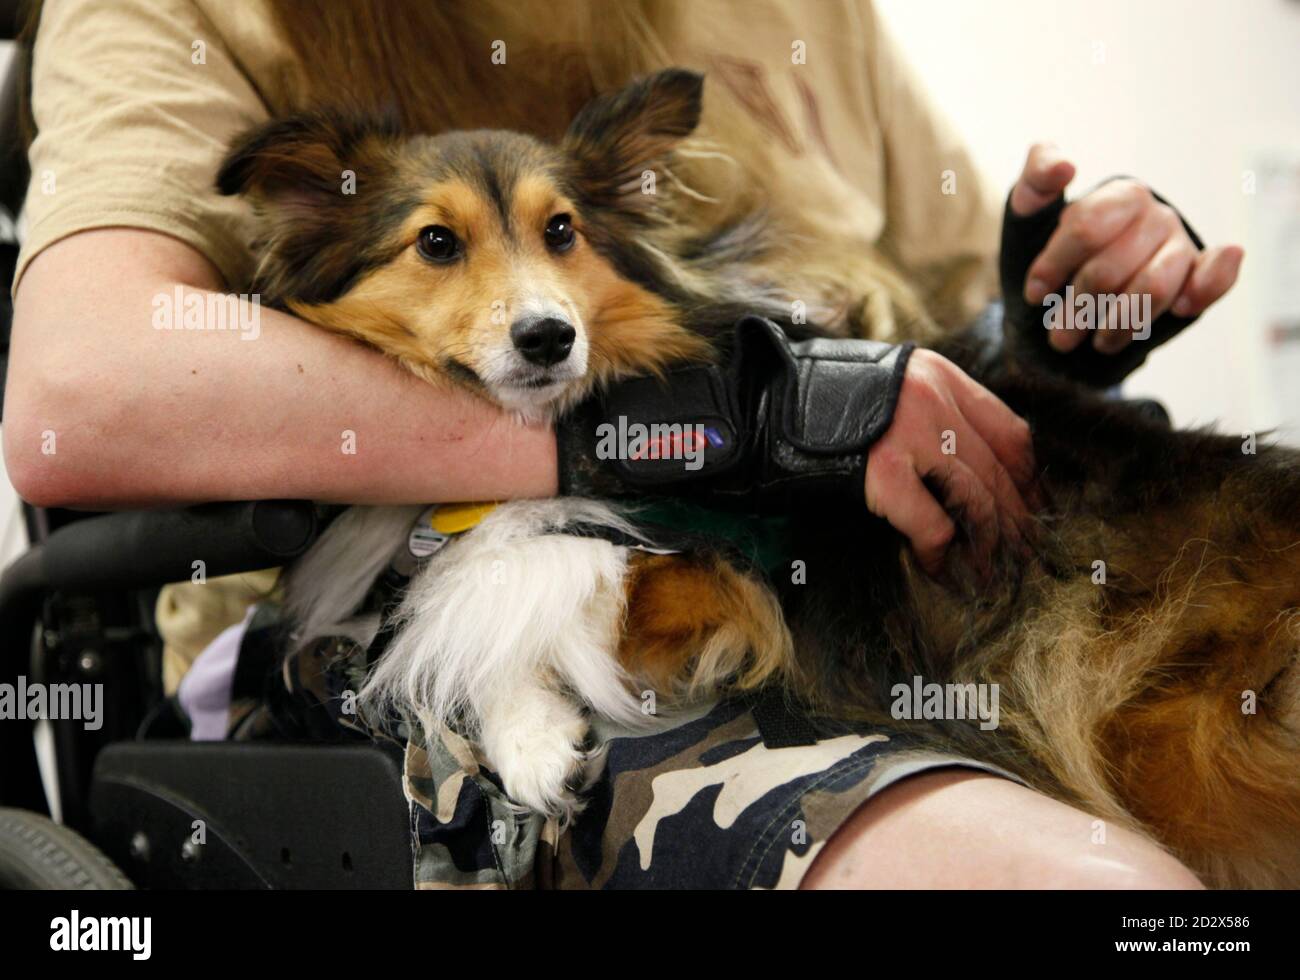 Multiple Sklerose Patienten John Hester es Wagen hält, einen zweibeinigen  Sheltie Hund verwendet in der Therapie für Menschen mit Behinderungen in  Denver, Colorado 16. Juli 2009. Wagen mit allen vier Beinen aber